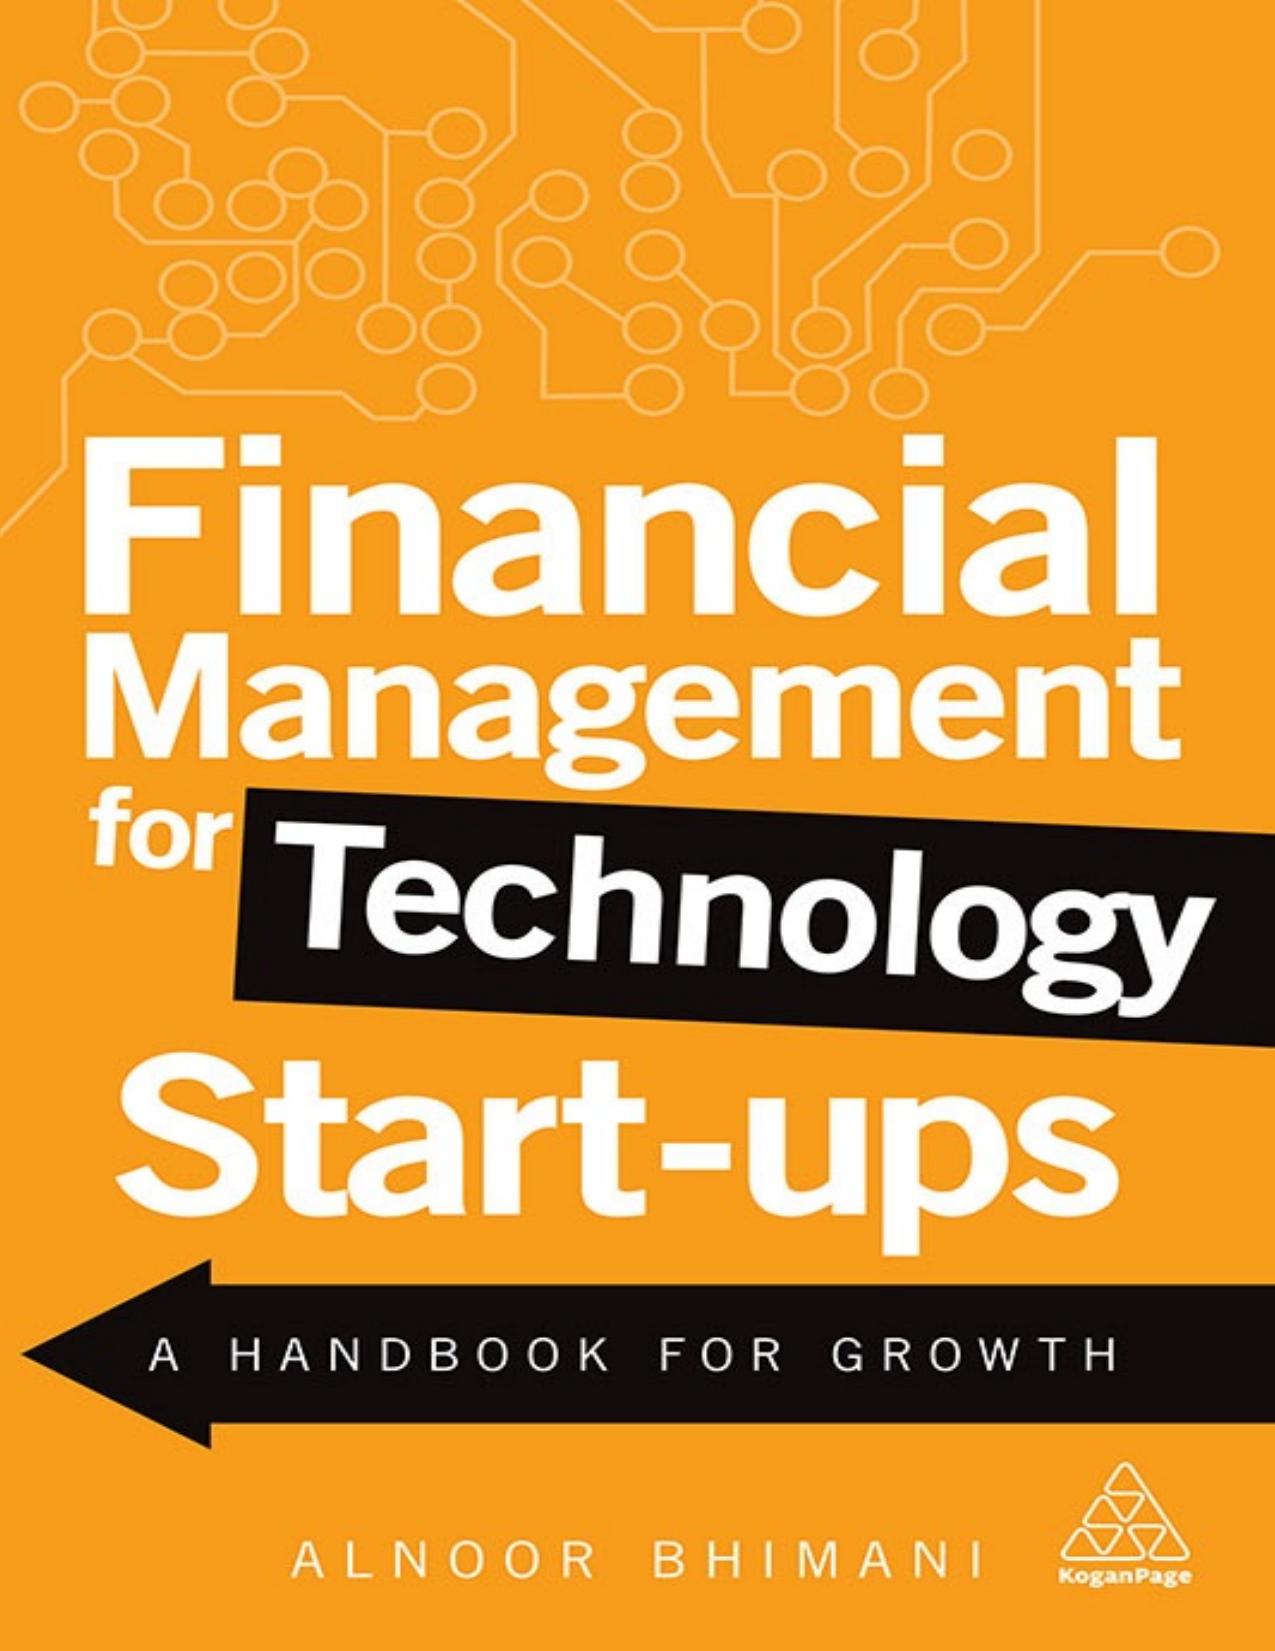 Financial Management for Technology Start-Ups: A Handbook for Growth - PDFDrive.com